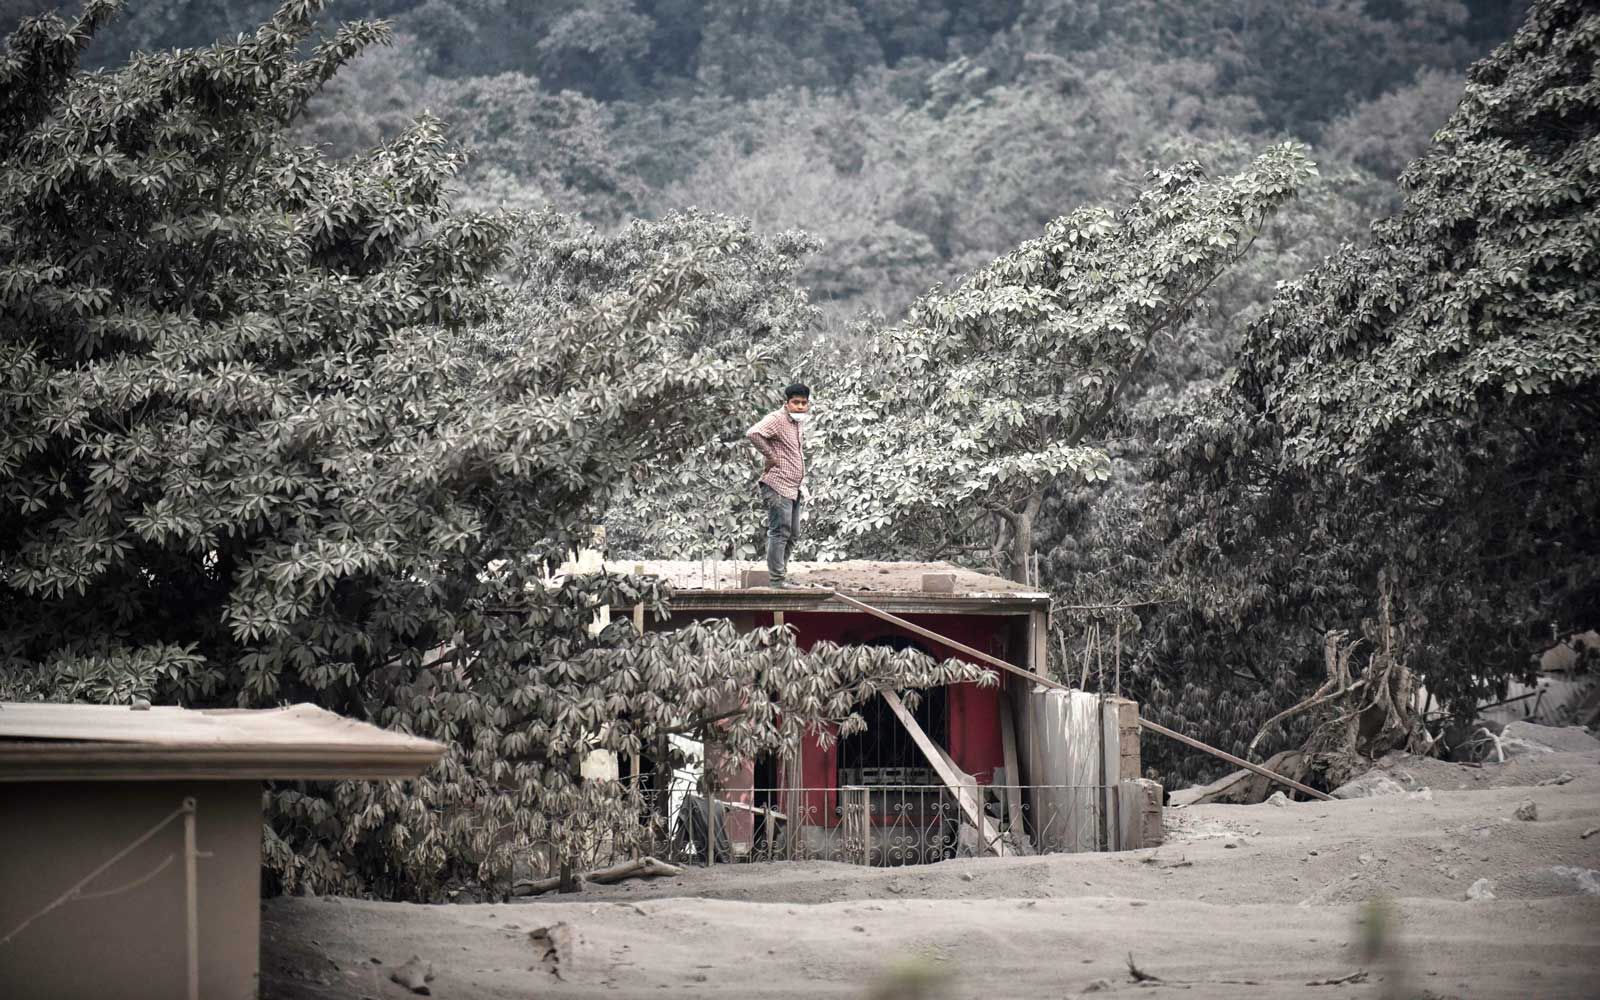 אדם עומד על גג בית בכפר מכוסה האפר סן מיגל לוס לוטס, במחלקת אסקוינטלה, כ- 35 ק'מ דרומית-מערבית לעיר גואטמלה, שנלקח ב -4 ביוני 2018, לאחר התפרצות הר הגעש פואגו.